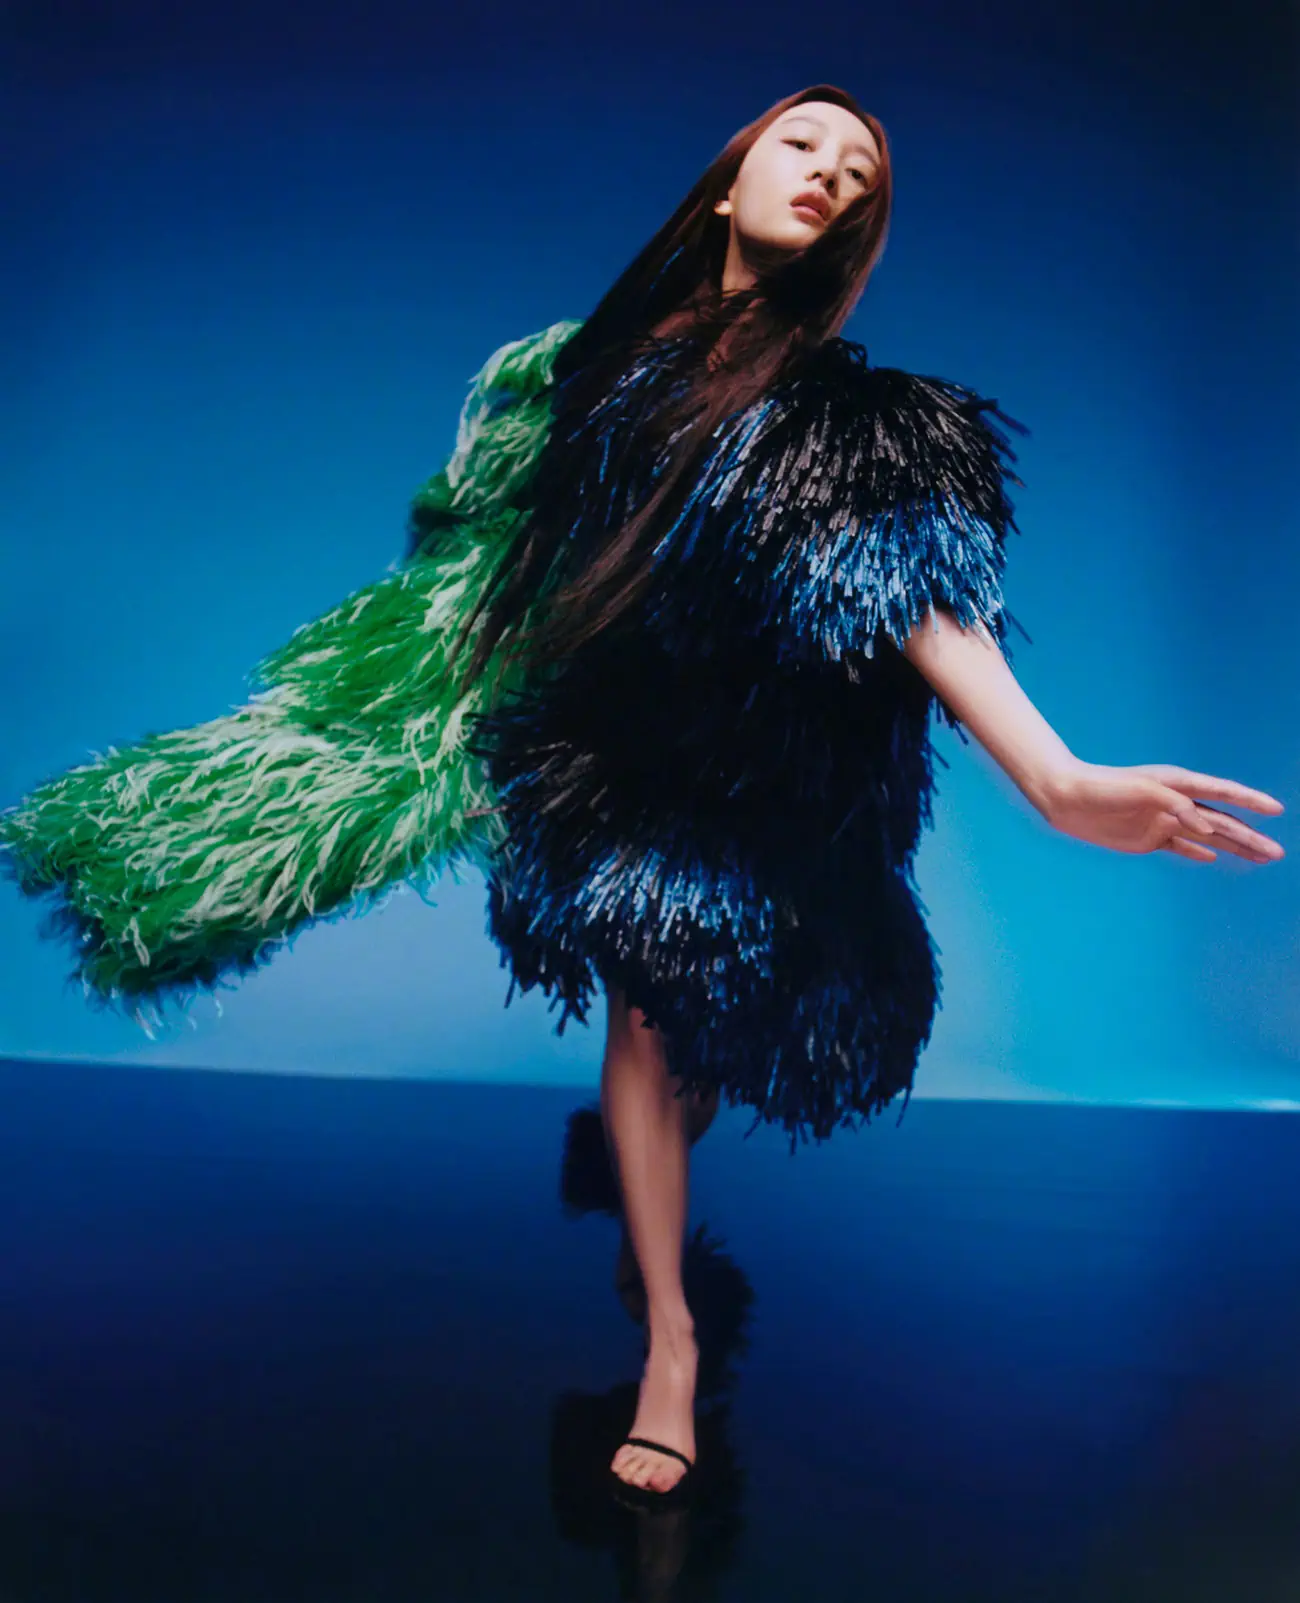 Zhou Dongyu covers Vogue China June 2023 by Dan Beleiu